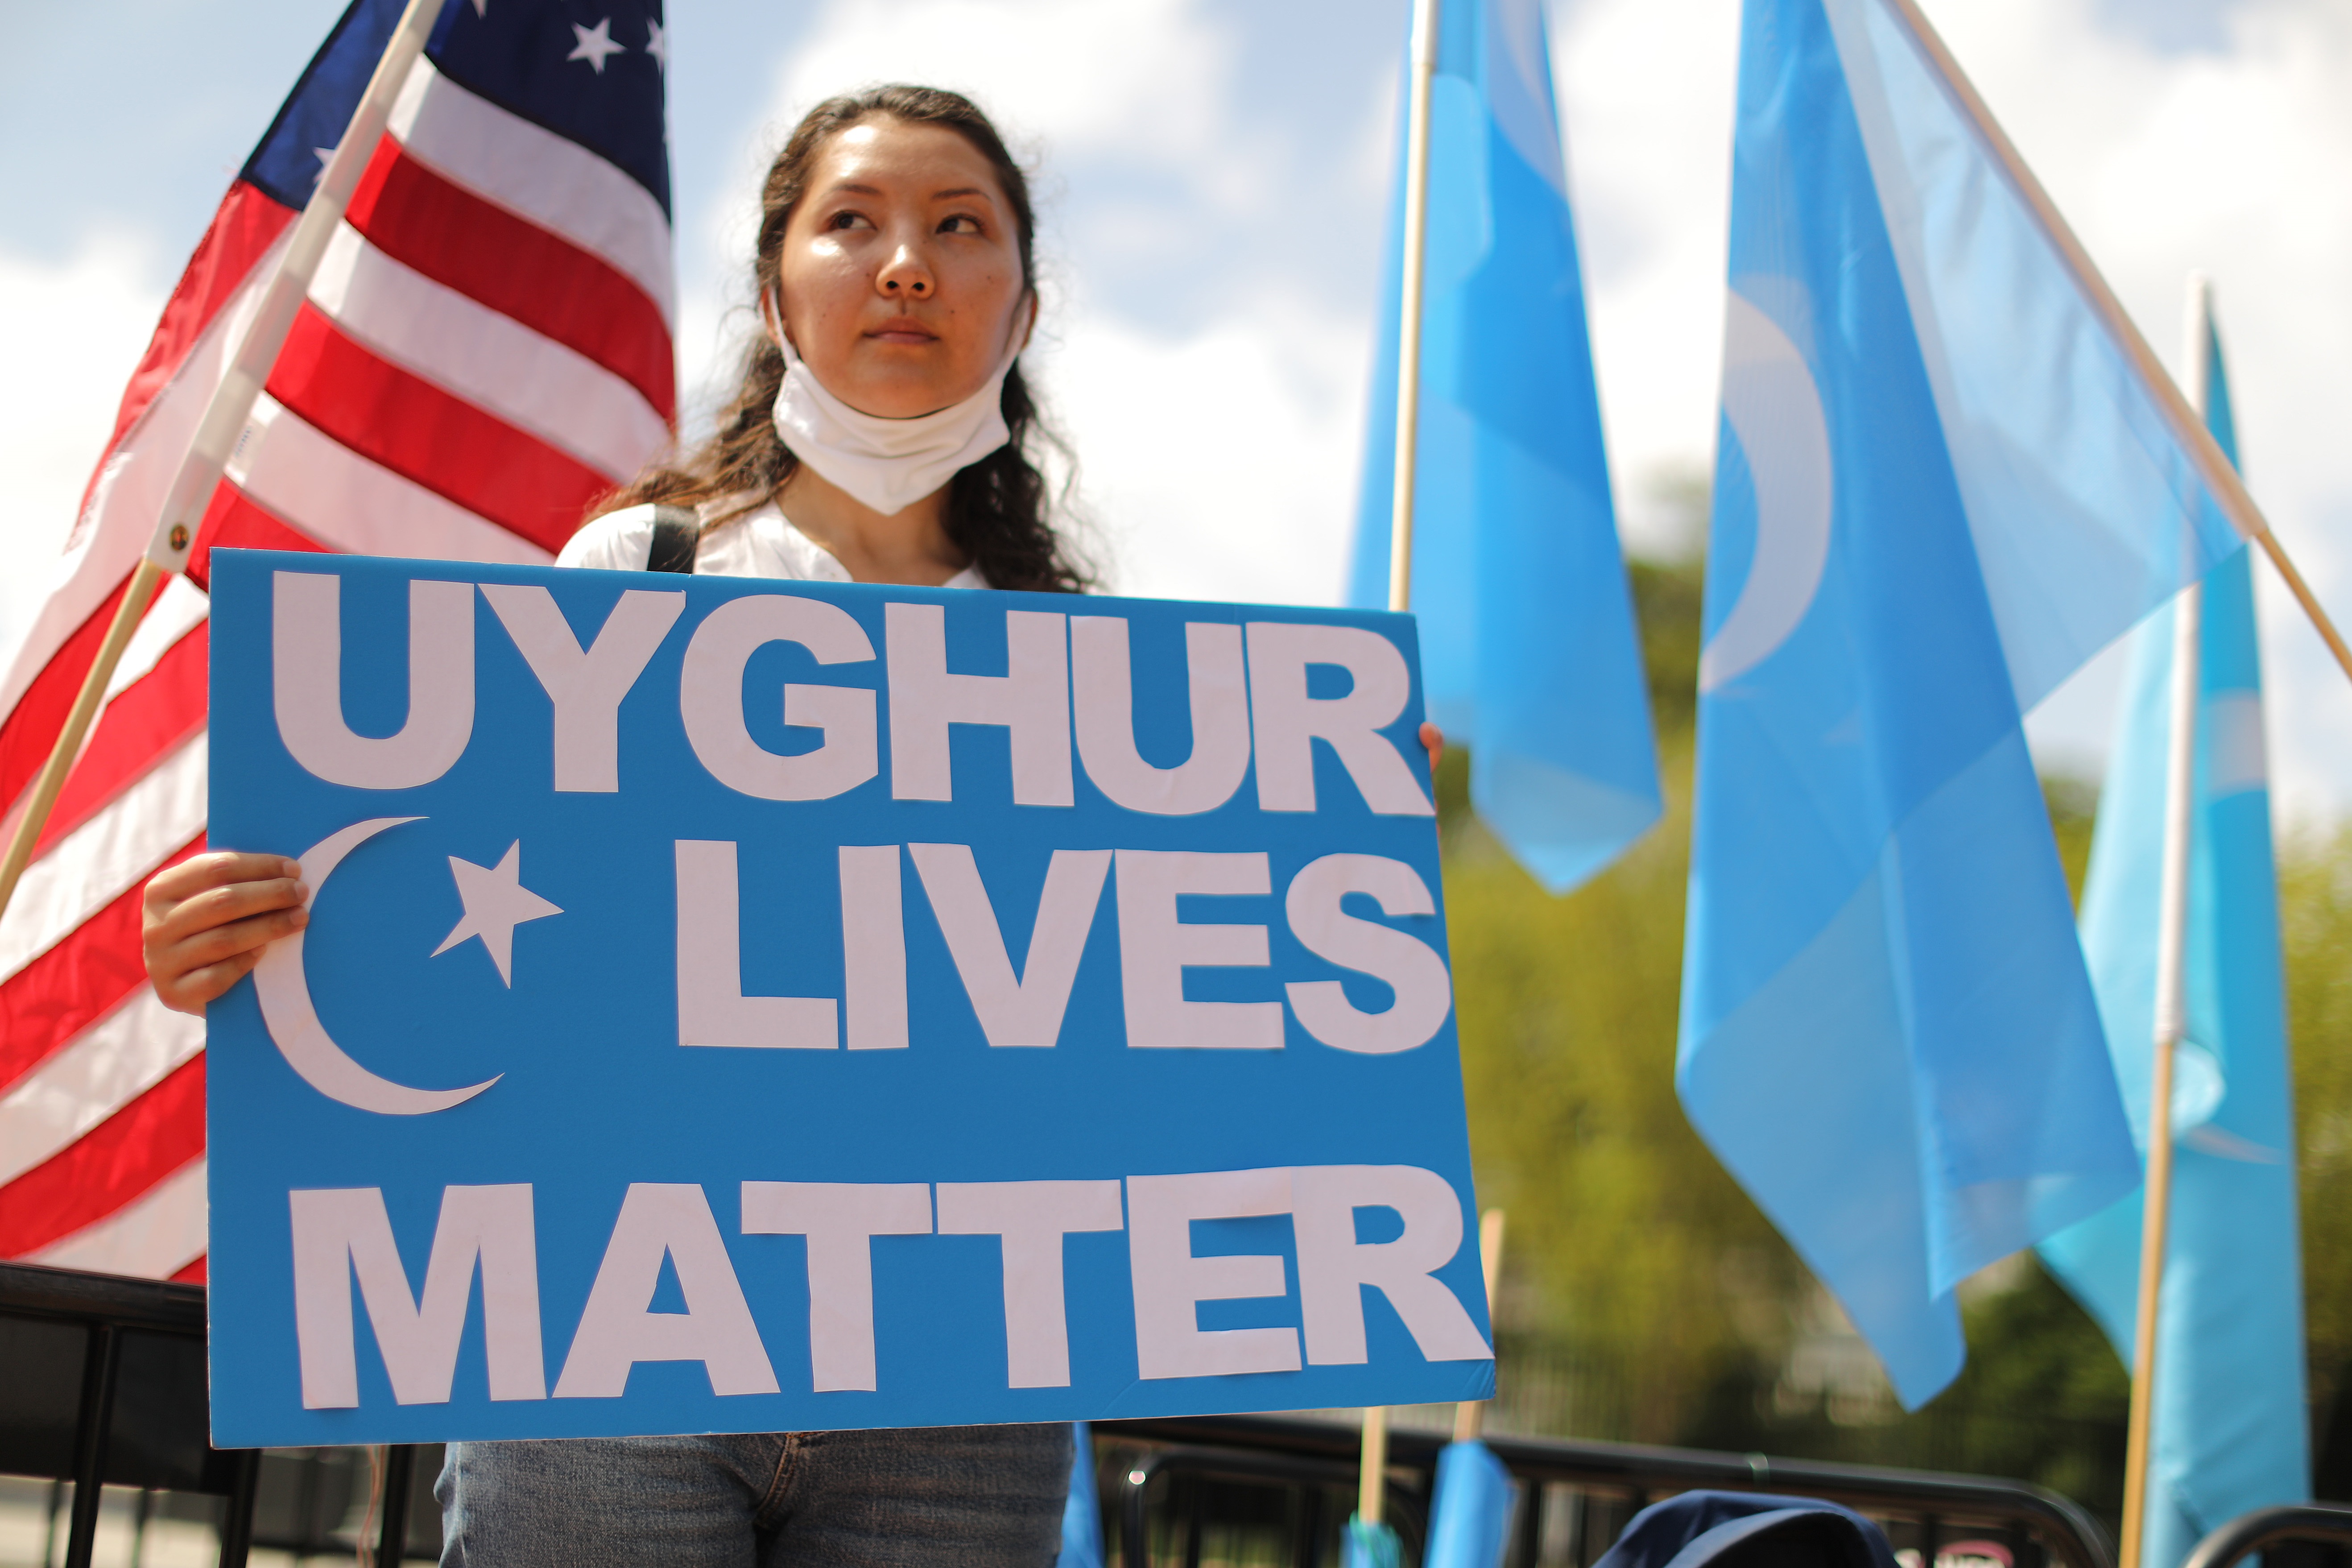 14/08/2020 Manifestación en el exterior de la Casa Blanca contra China pide a Estados Unidos que ponga fin al acuerdo comerciales y tomen medidas para detener la opresión de los uigures.
ECONOMIA 
CHIP SOMODEVILLA
